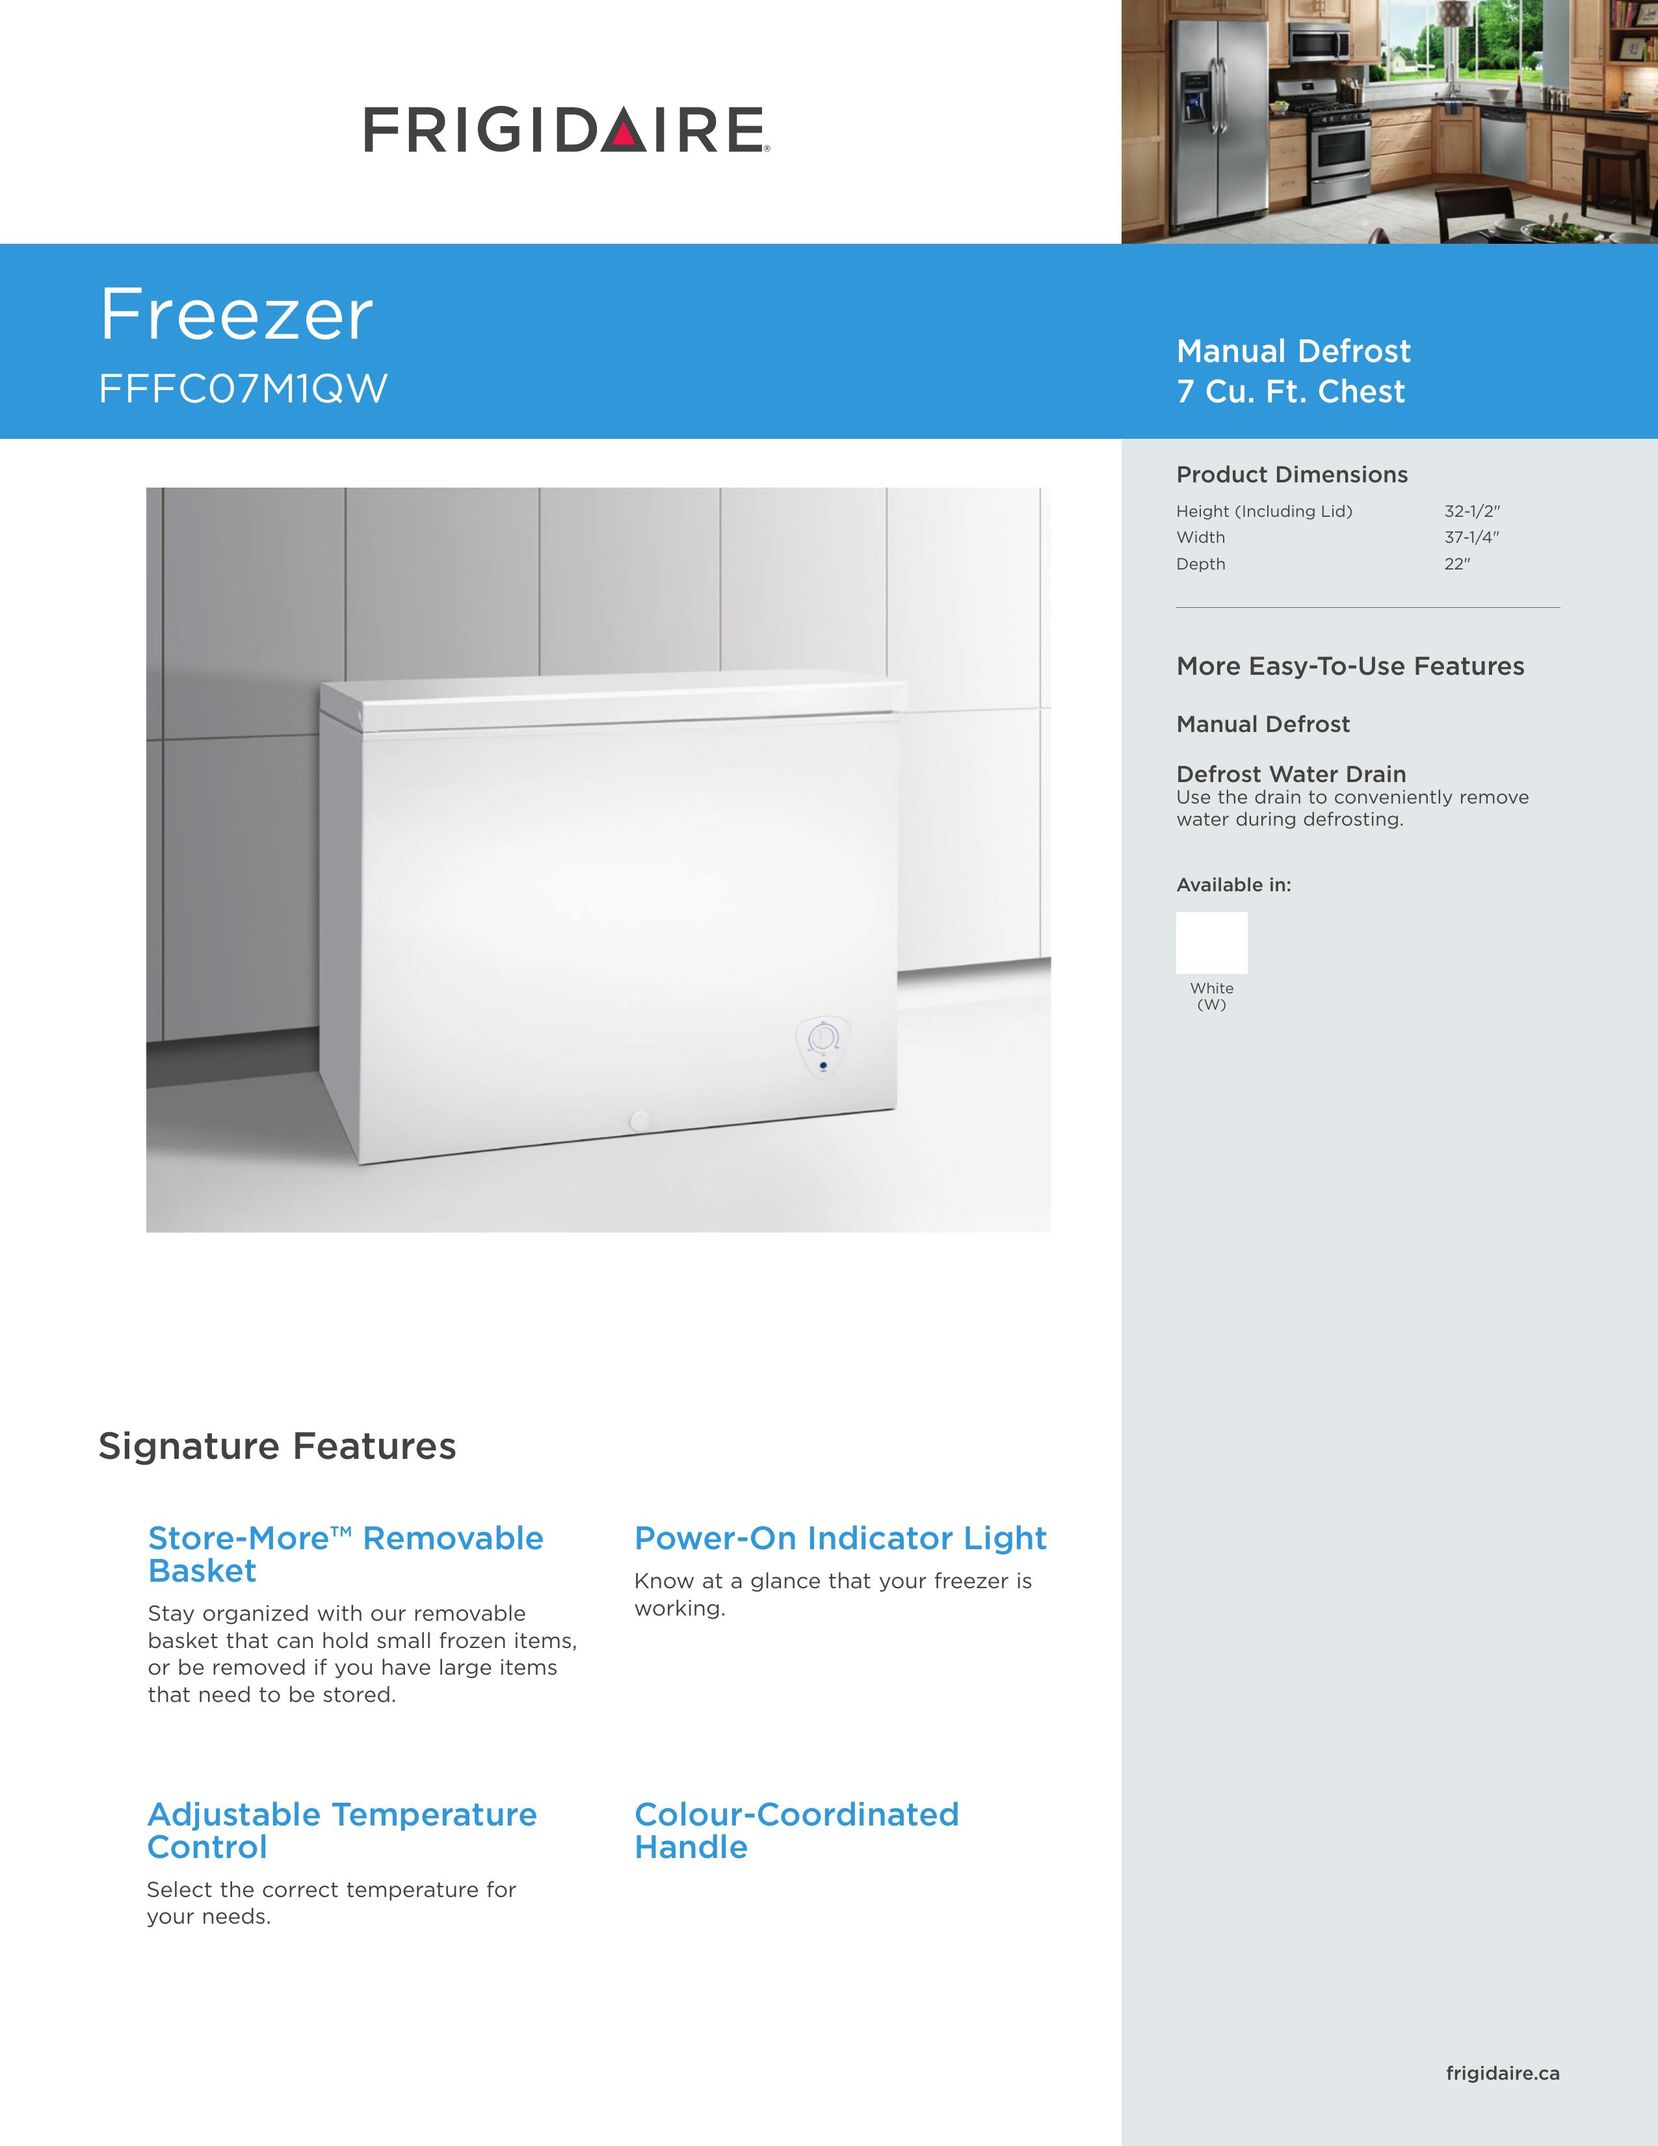 Frigidaire FFFCO7M1QW Freezer User Manual